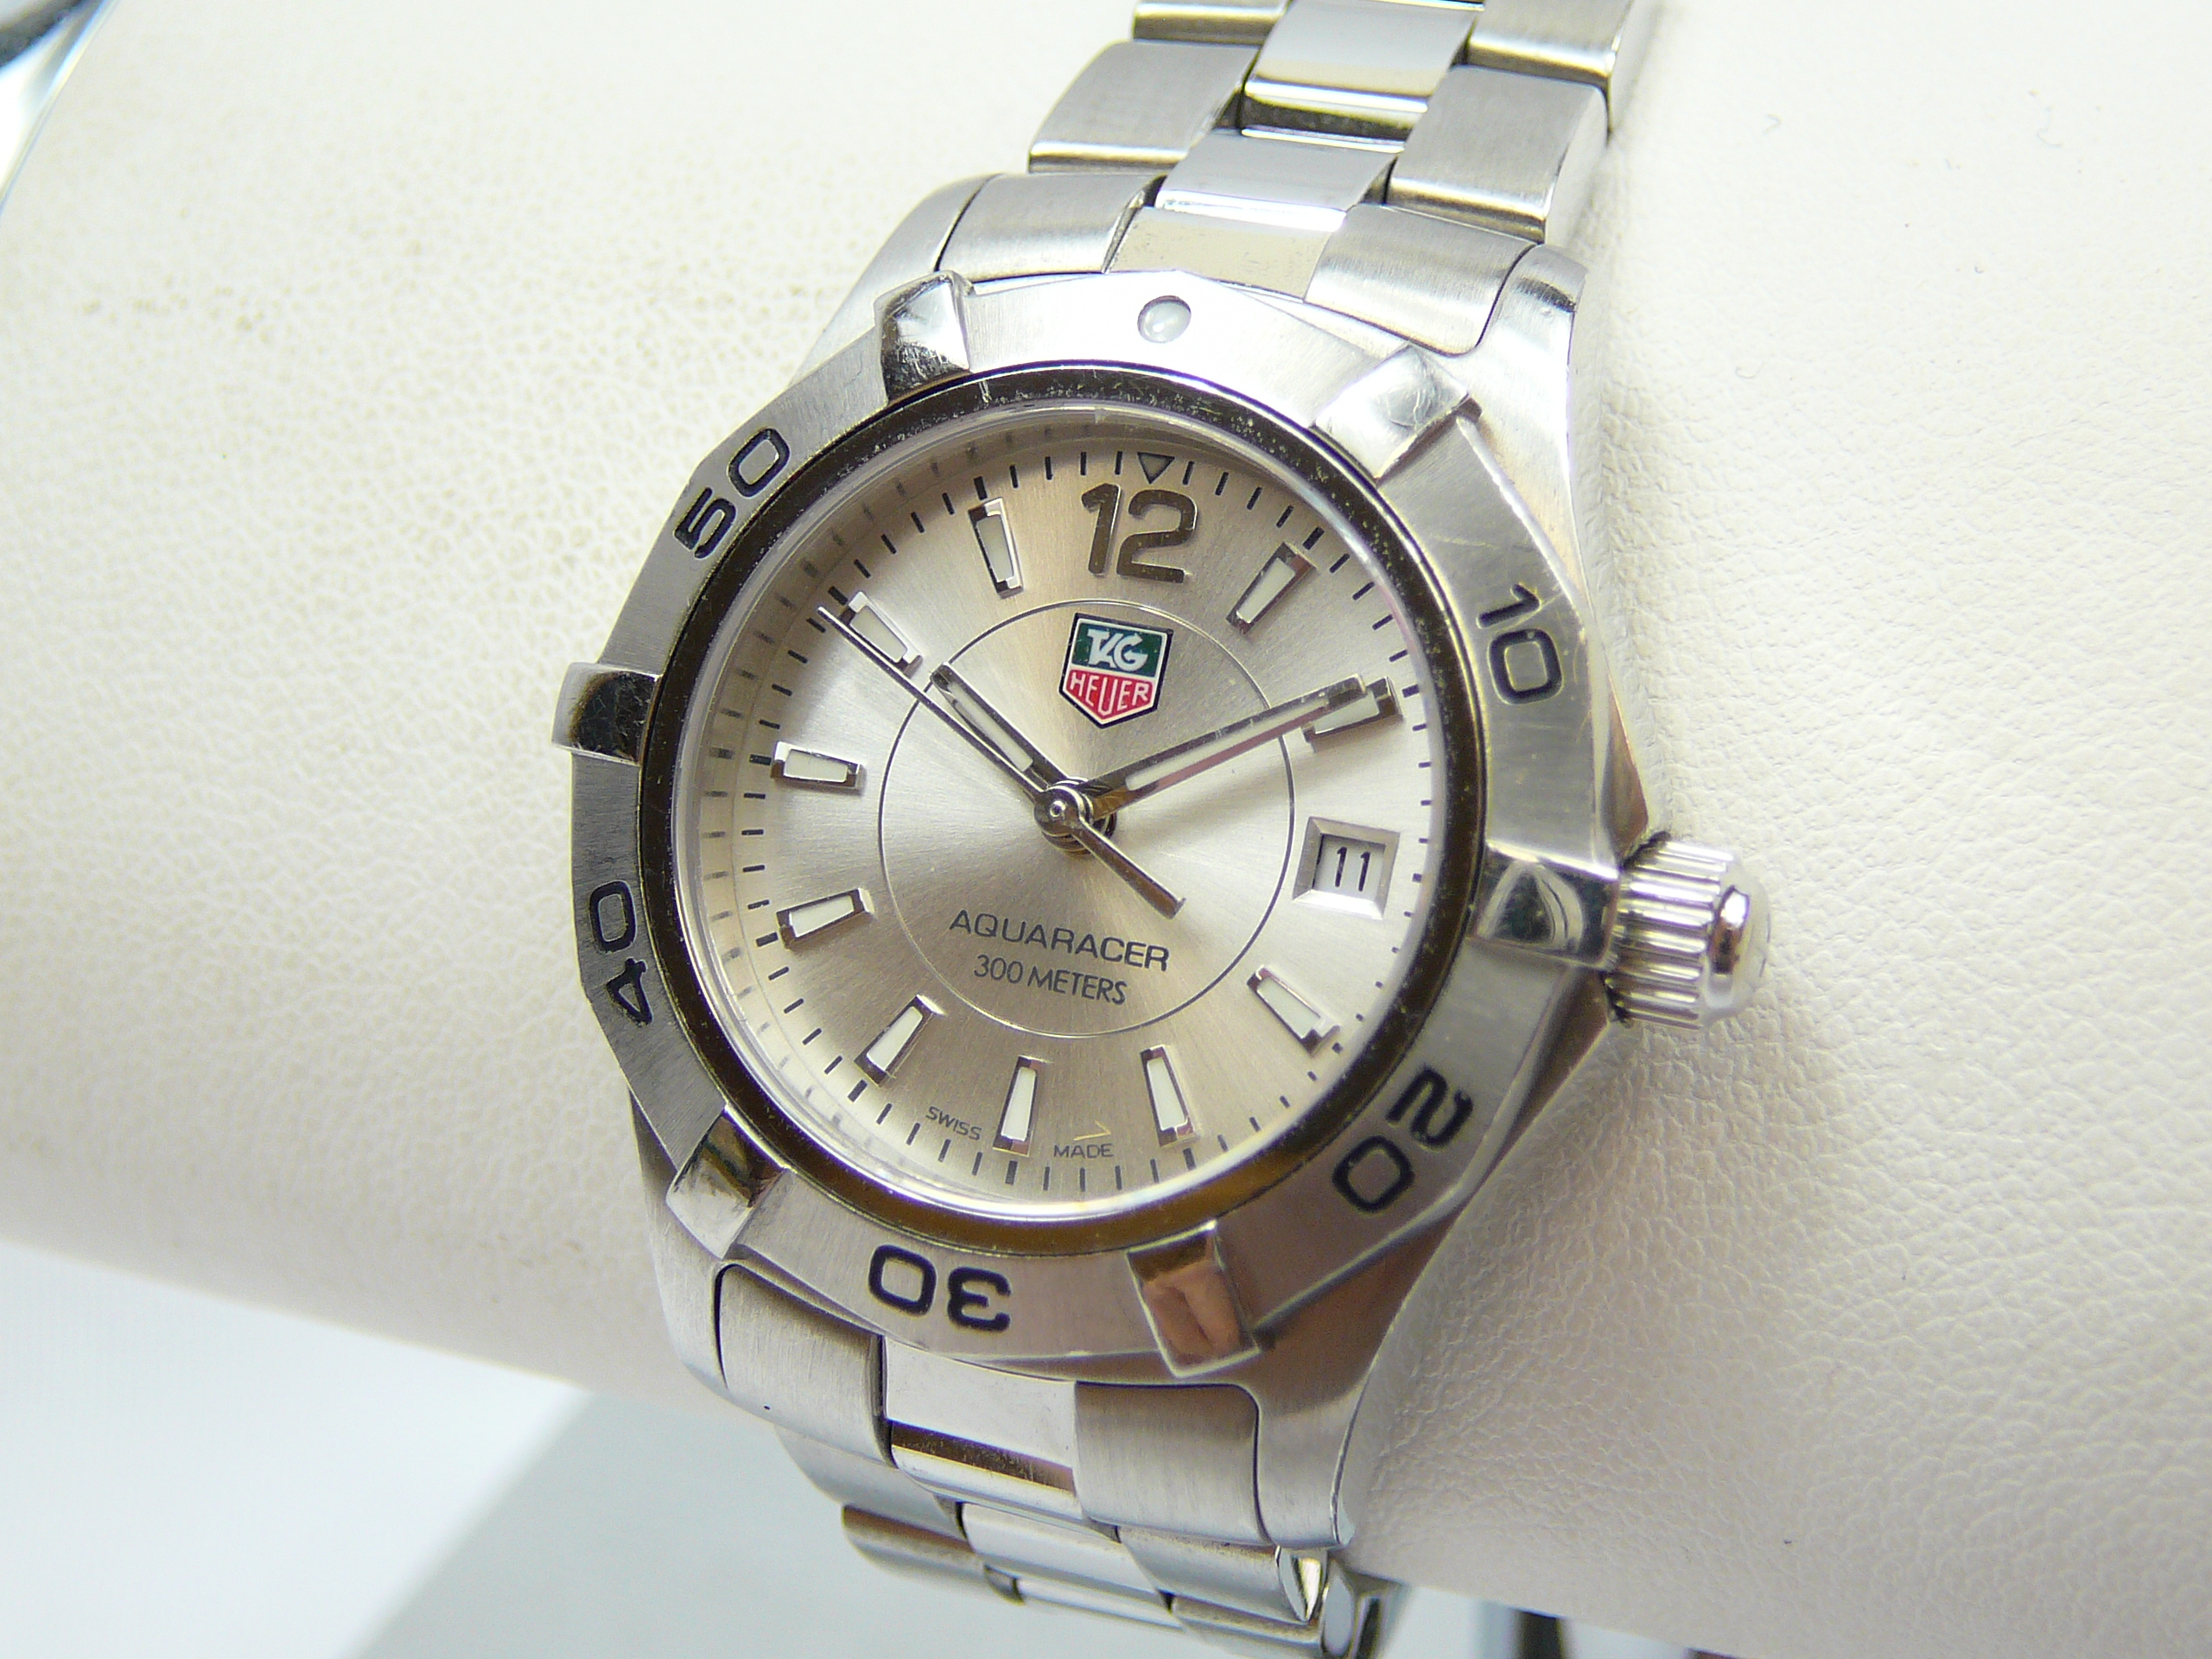 Ladies Tag Heuer Wrist Watch - Image 2 of 3